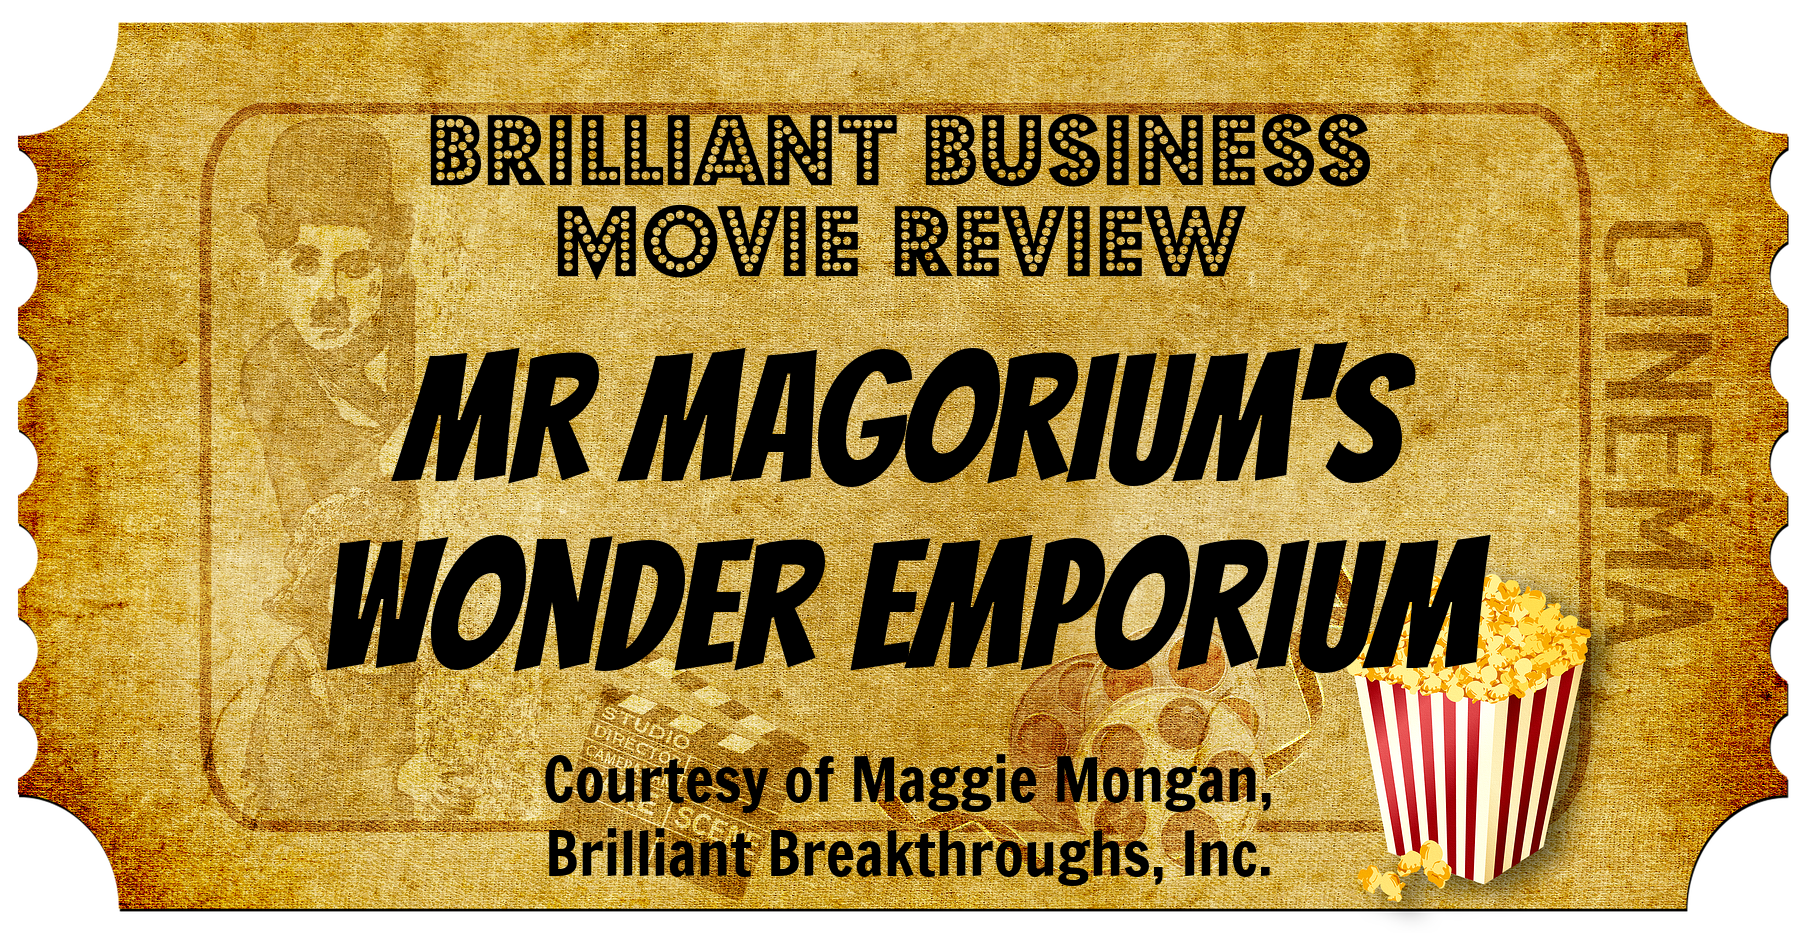 The movie ticket for "Mr. Magorium's Wonder Emporium"